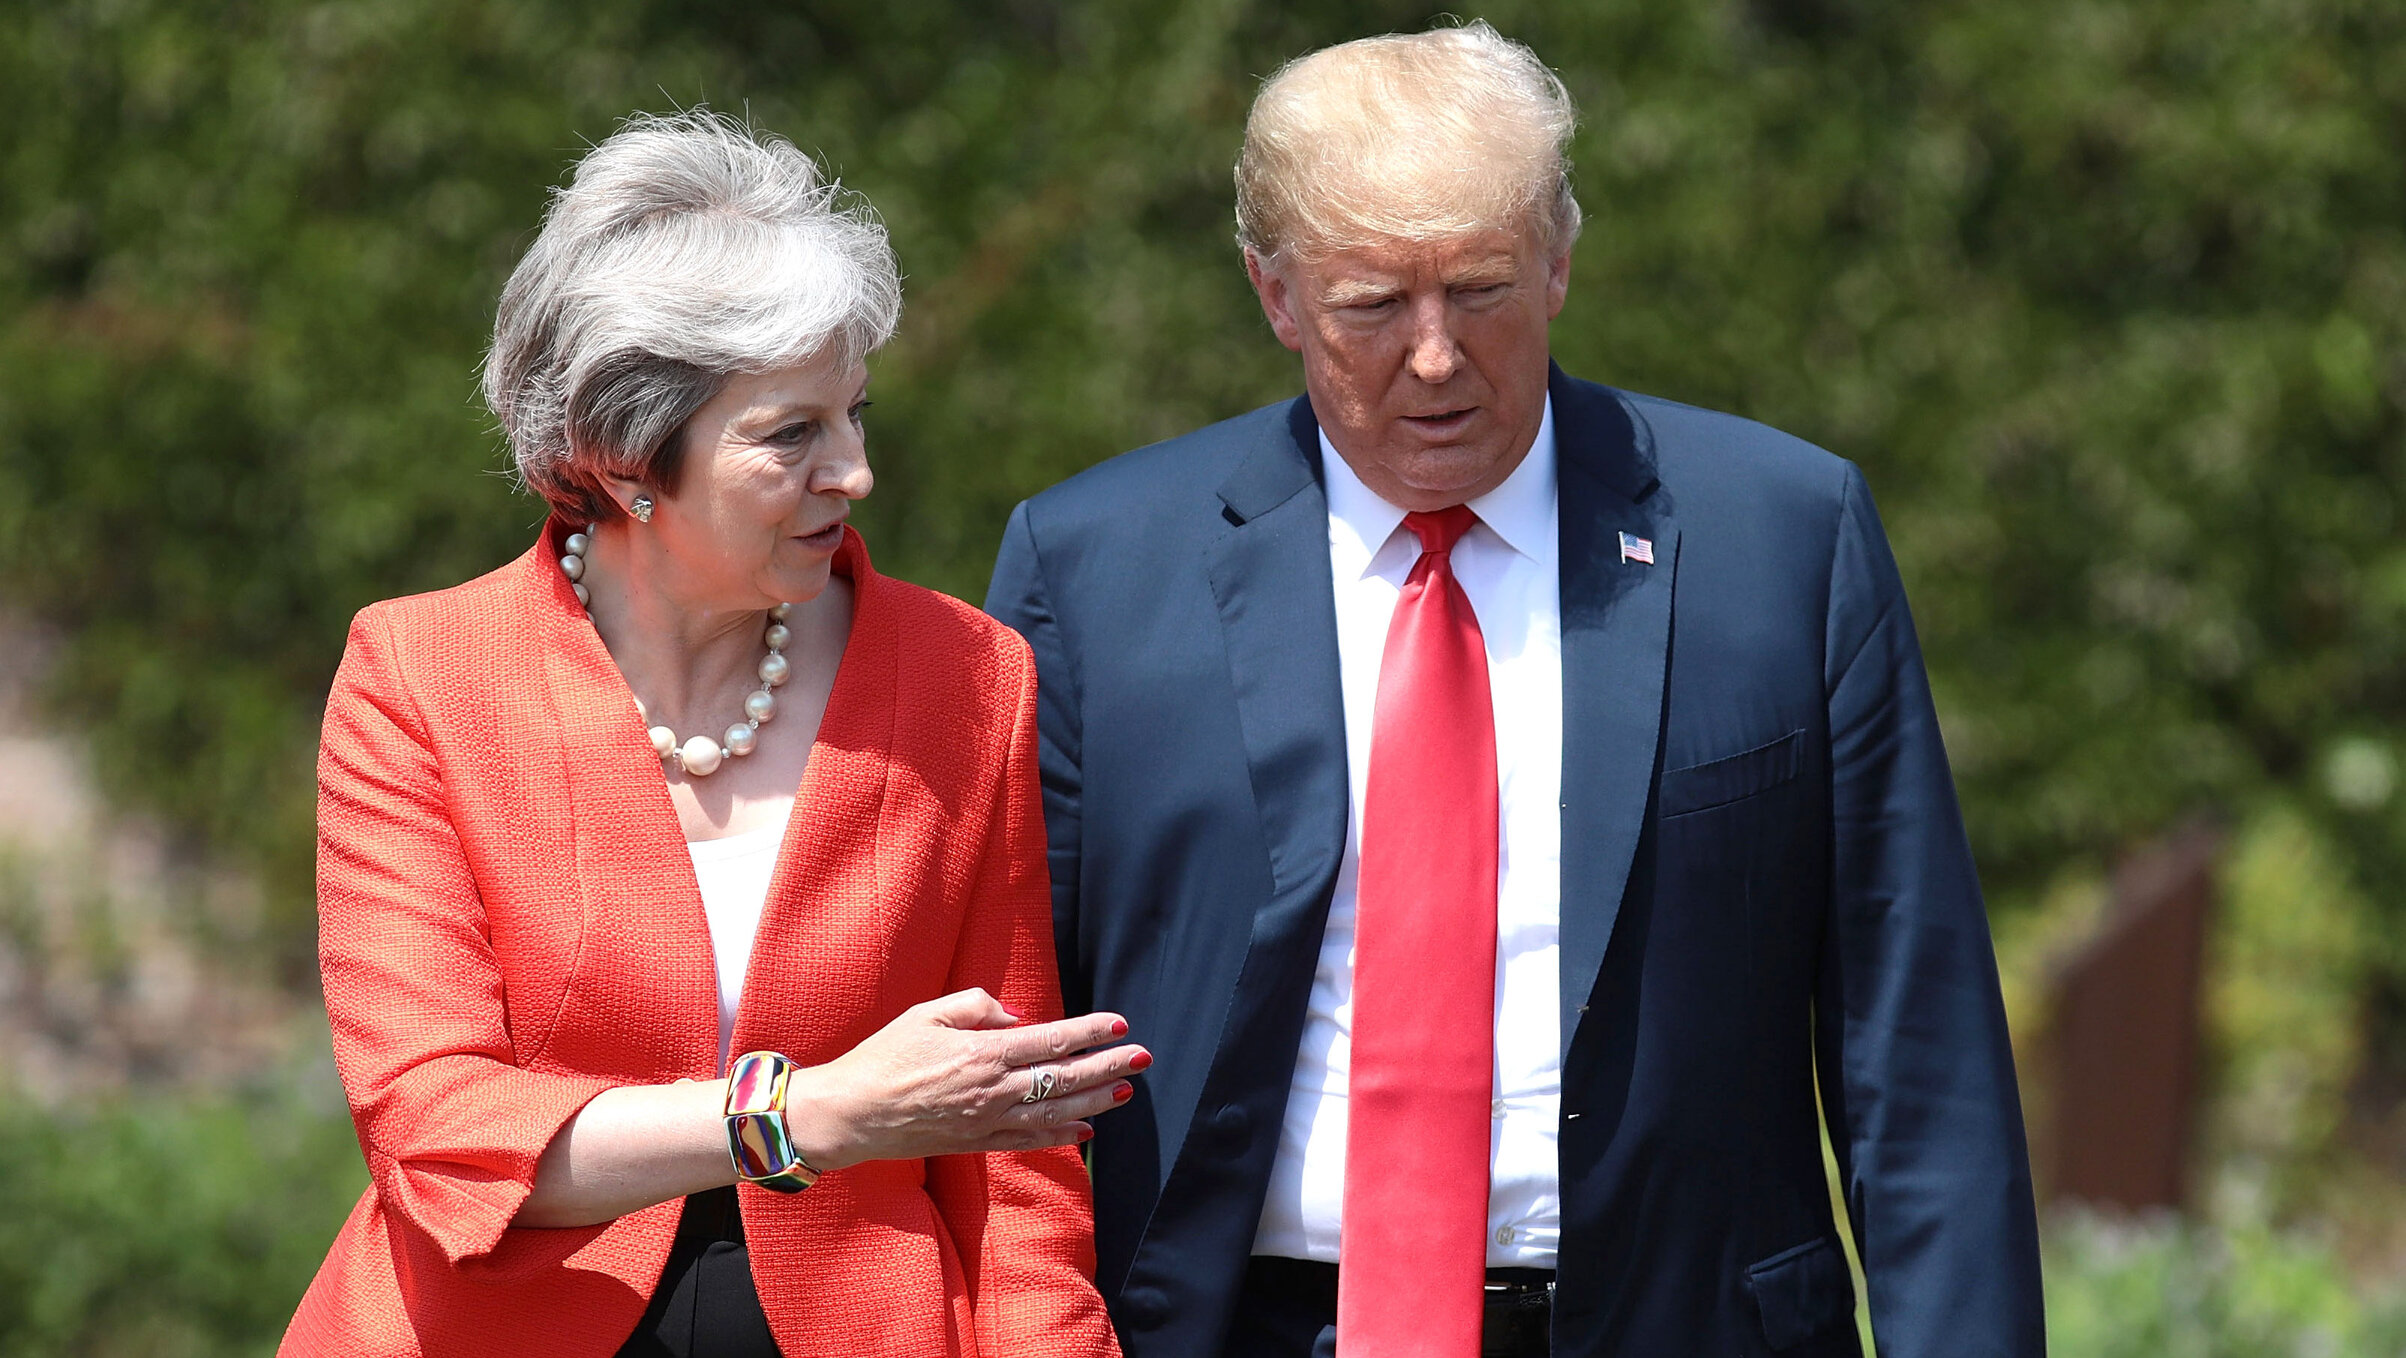 Trump ar plăti 100.000 de lire sterline numai să n-o mai audă pe Theresa May vorbind